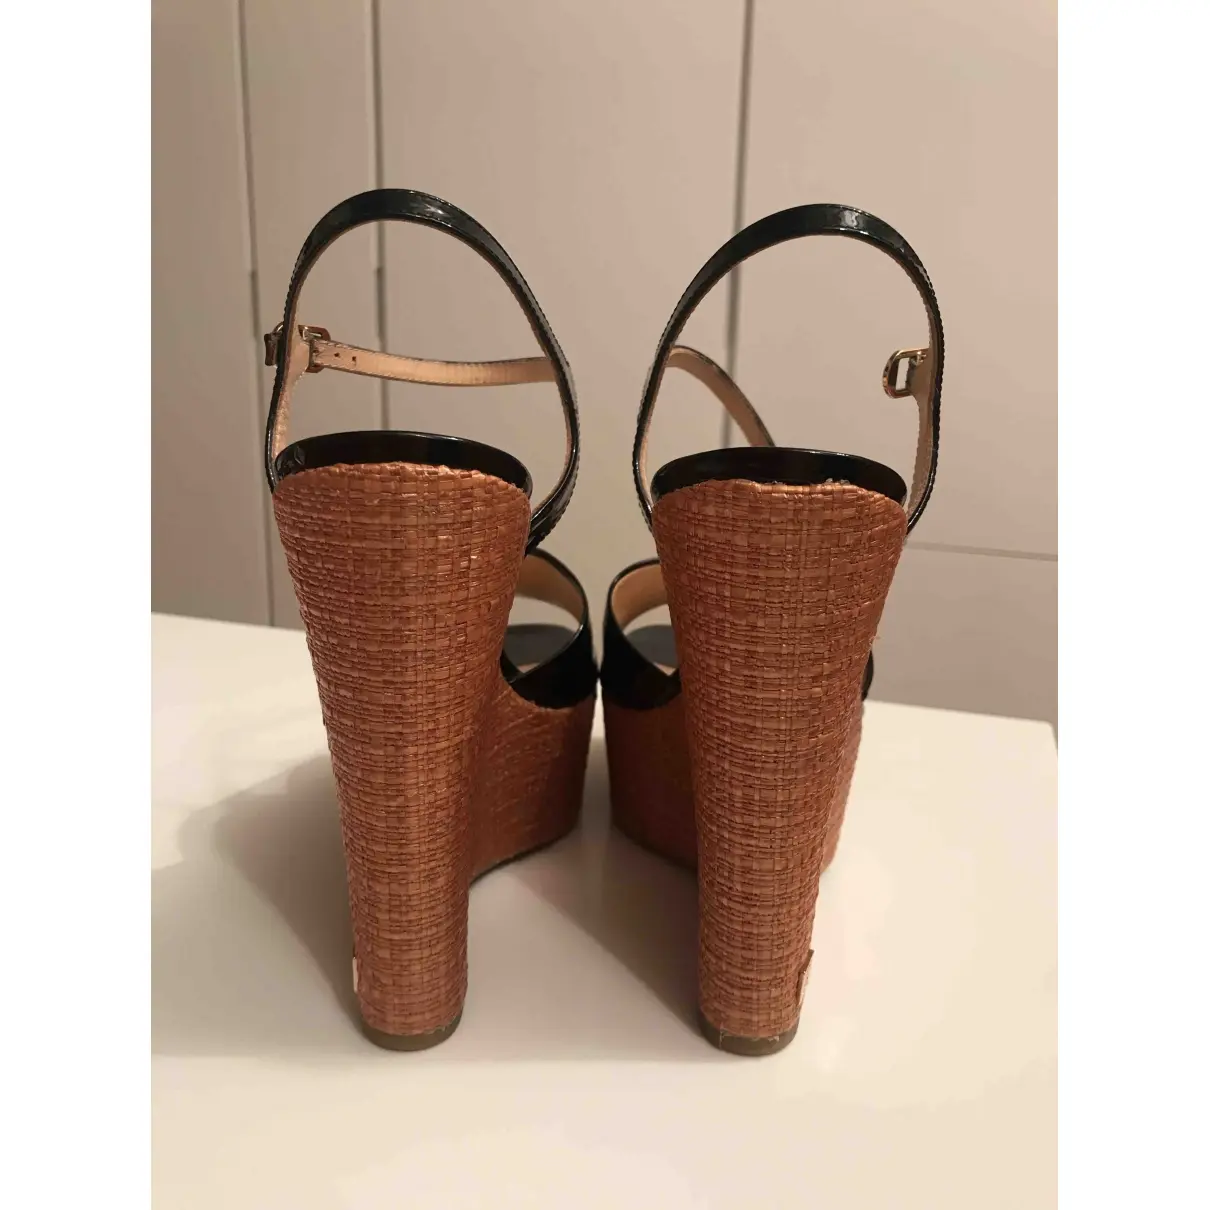 Alchimia Di Ballin Patent leather sandals for sale